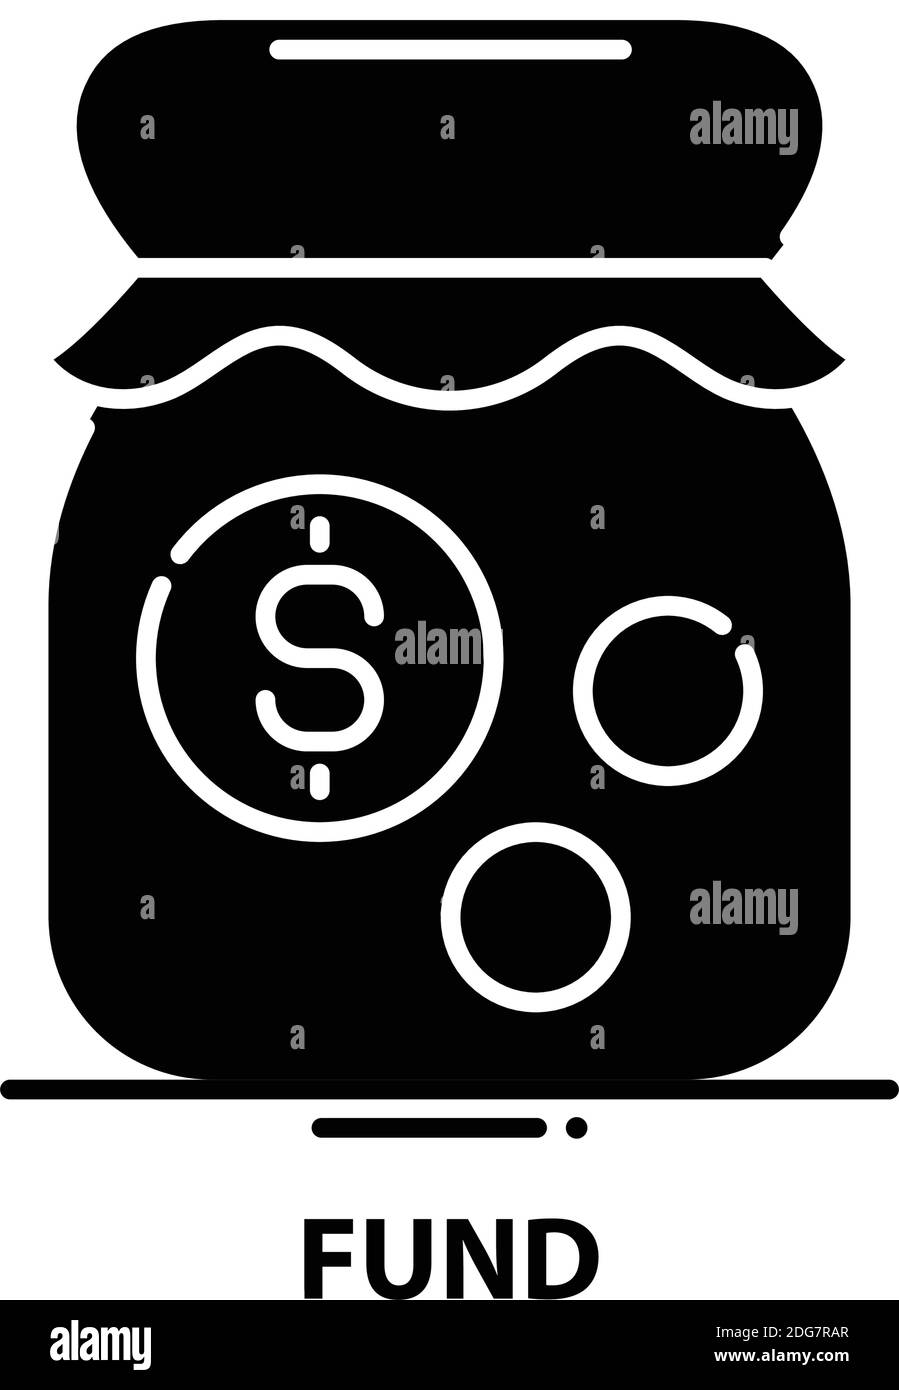 fondssymbol, schwarzes Vektorzeichen mit editierbaren Konturen, Konzeptdarstellung Stock Vektor